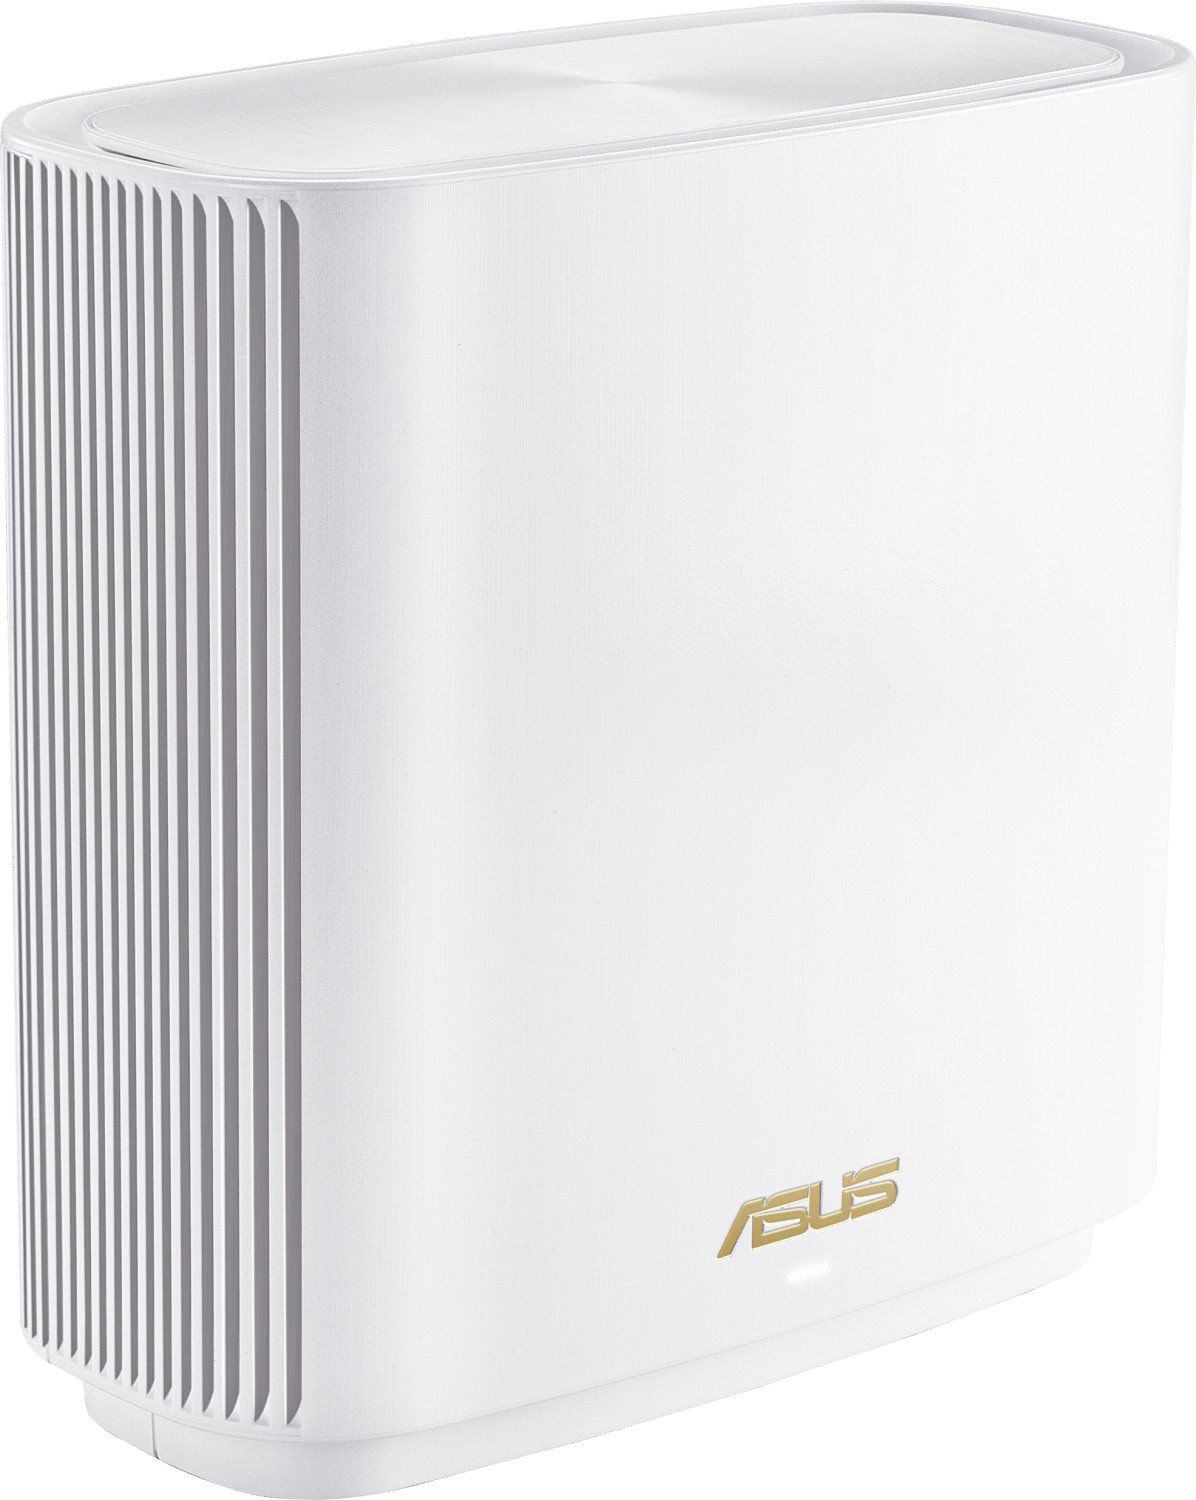 ASUS brezžična AX6600 WiFi 6 dostopna točka ZenWiFi XT8 - 1 pack